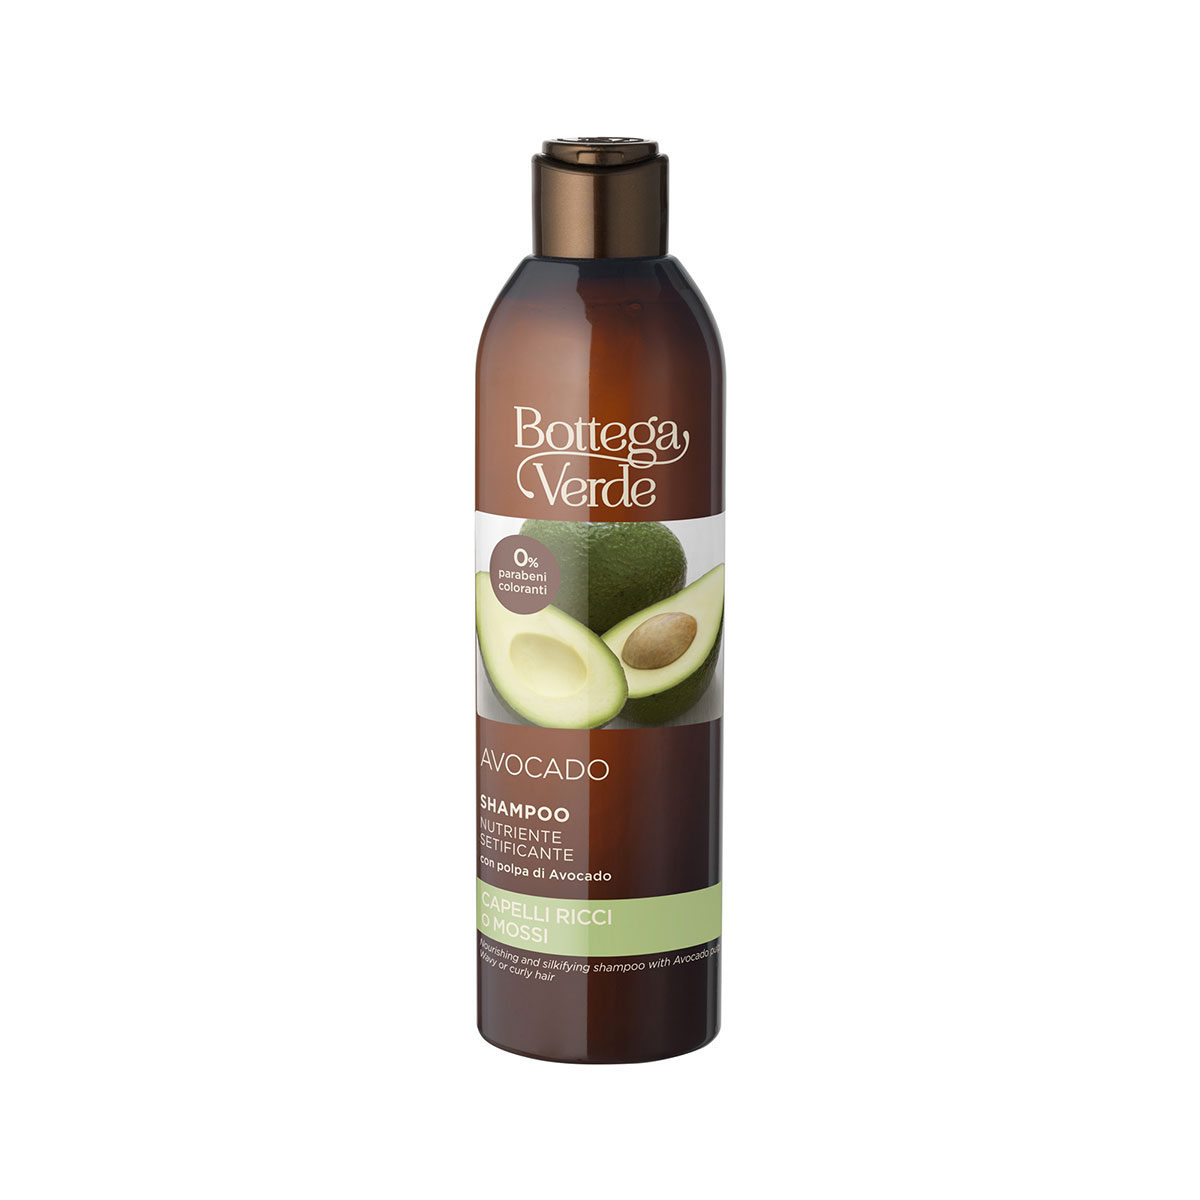 Avocado - Shampoo nutriente setificante - con polpa di Avocado - capelli ricci o mossi